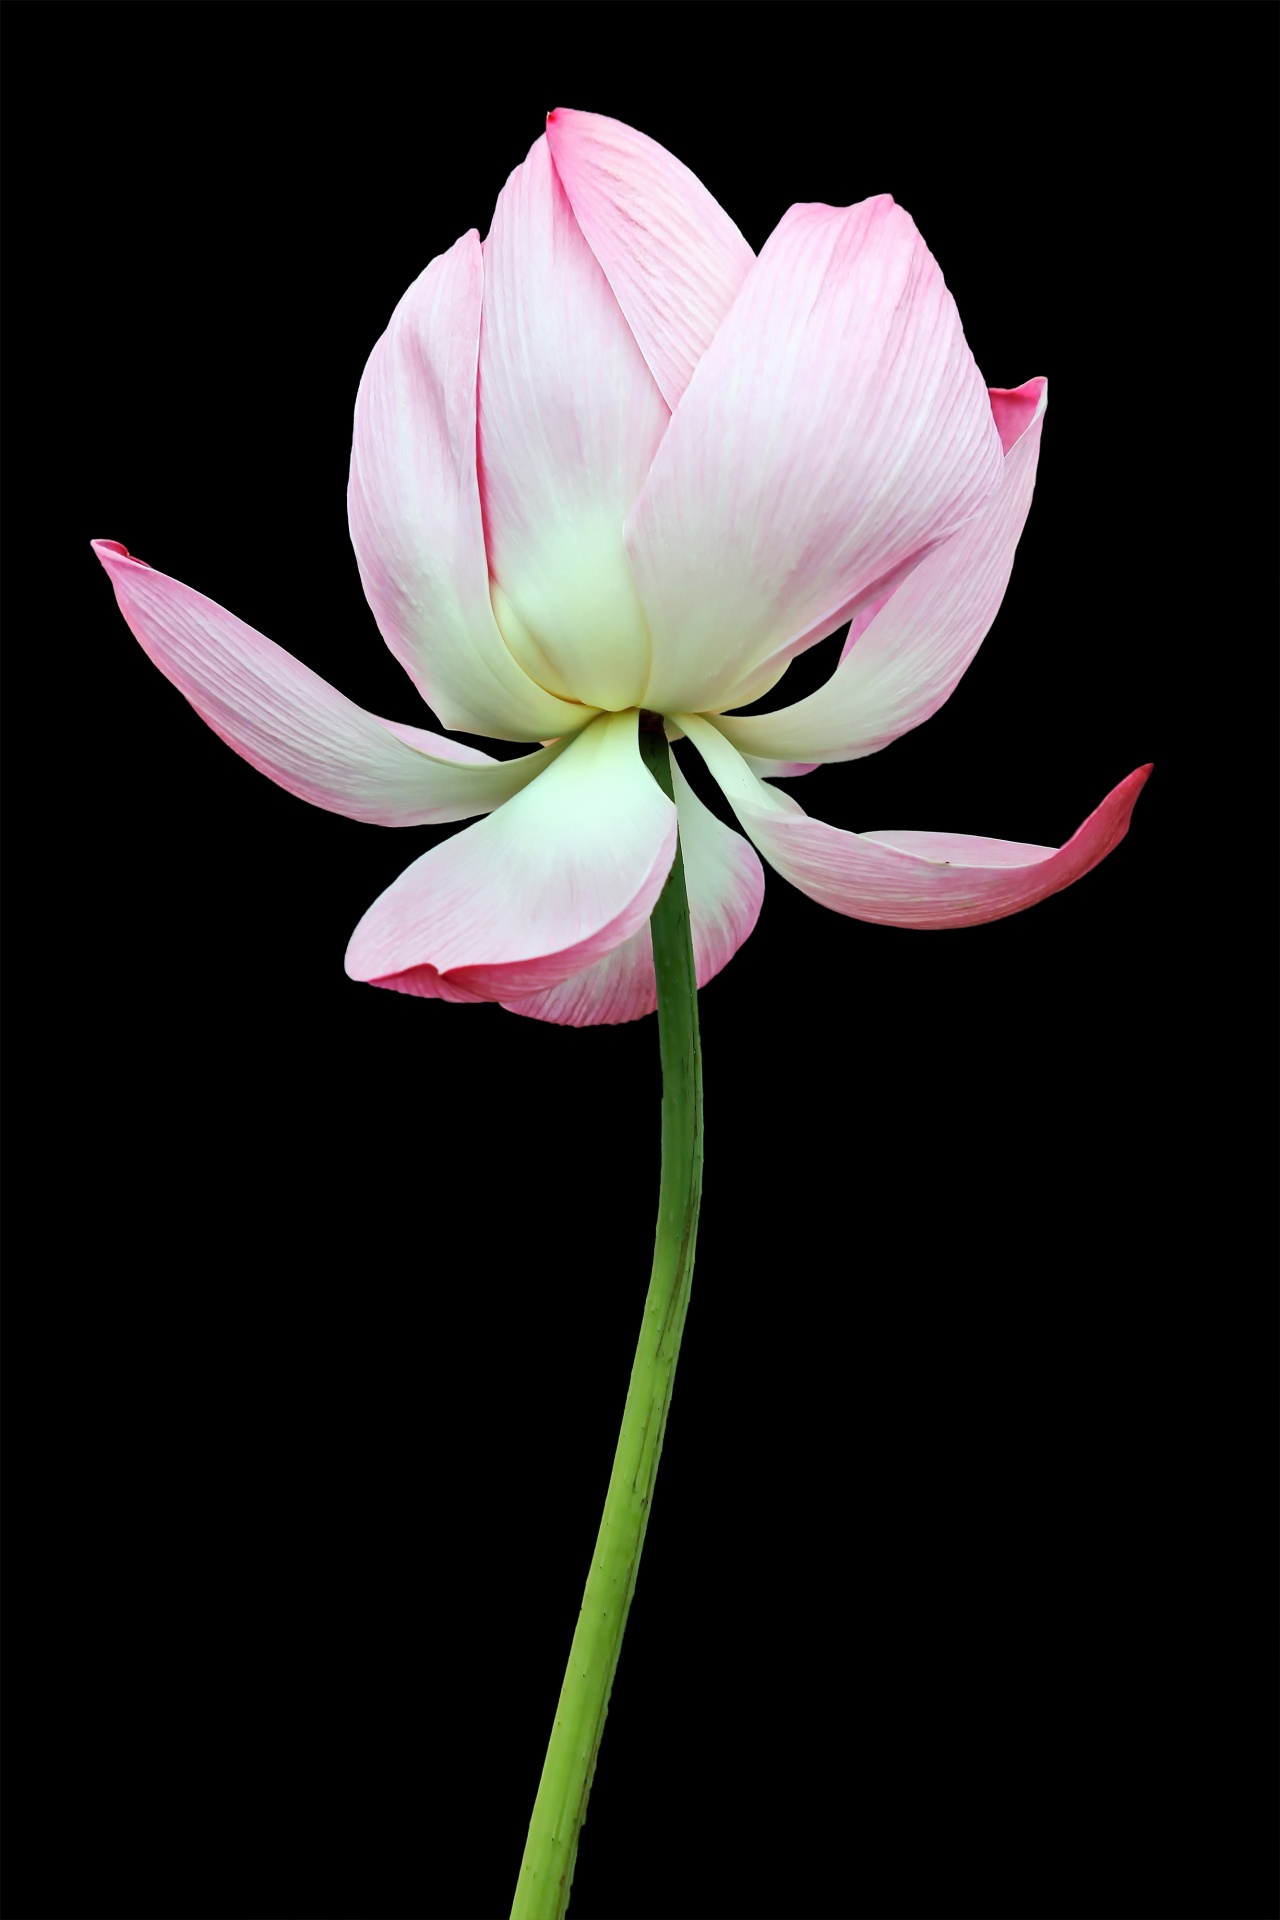 Lotus flower bloom